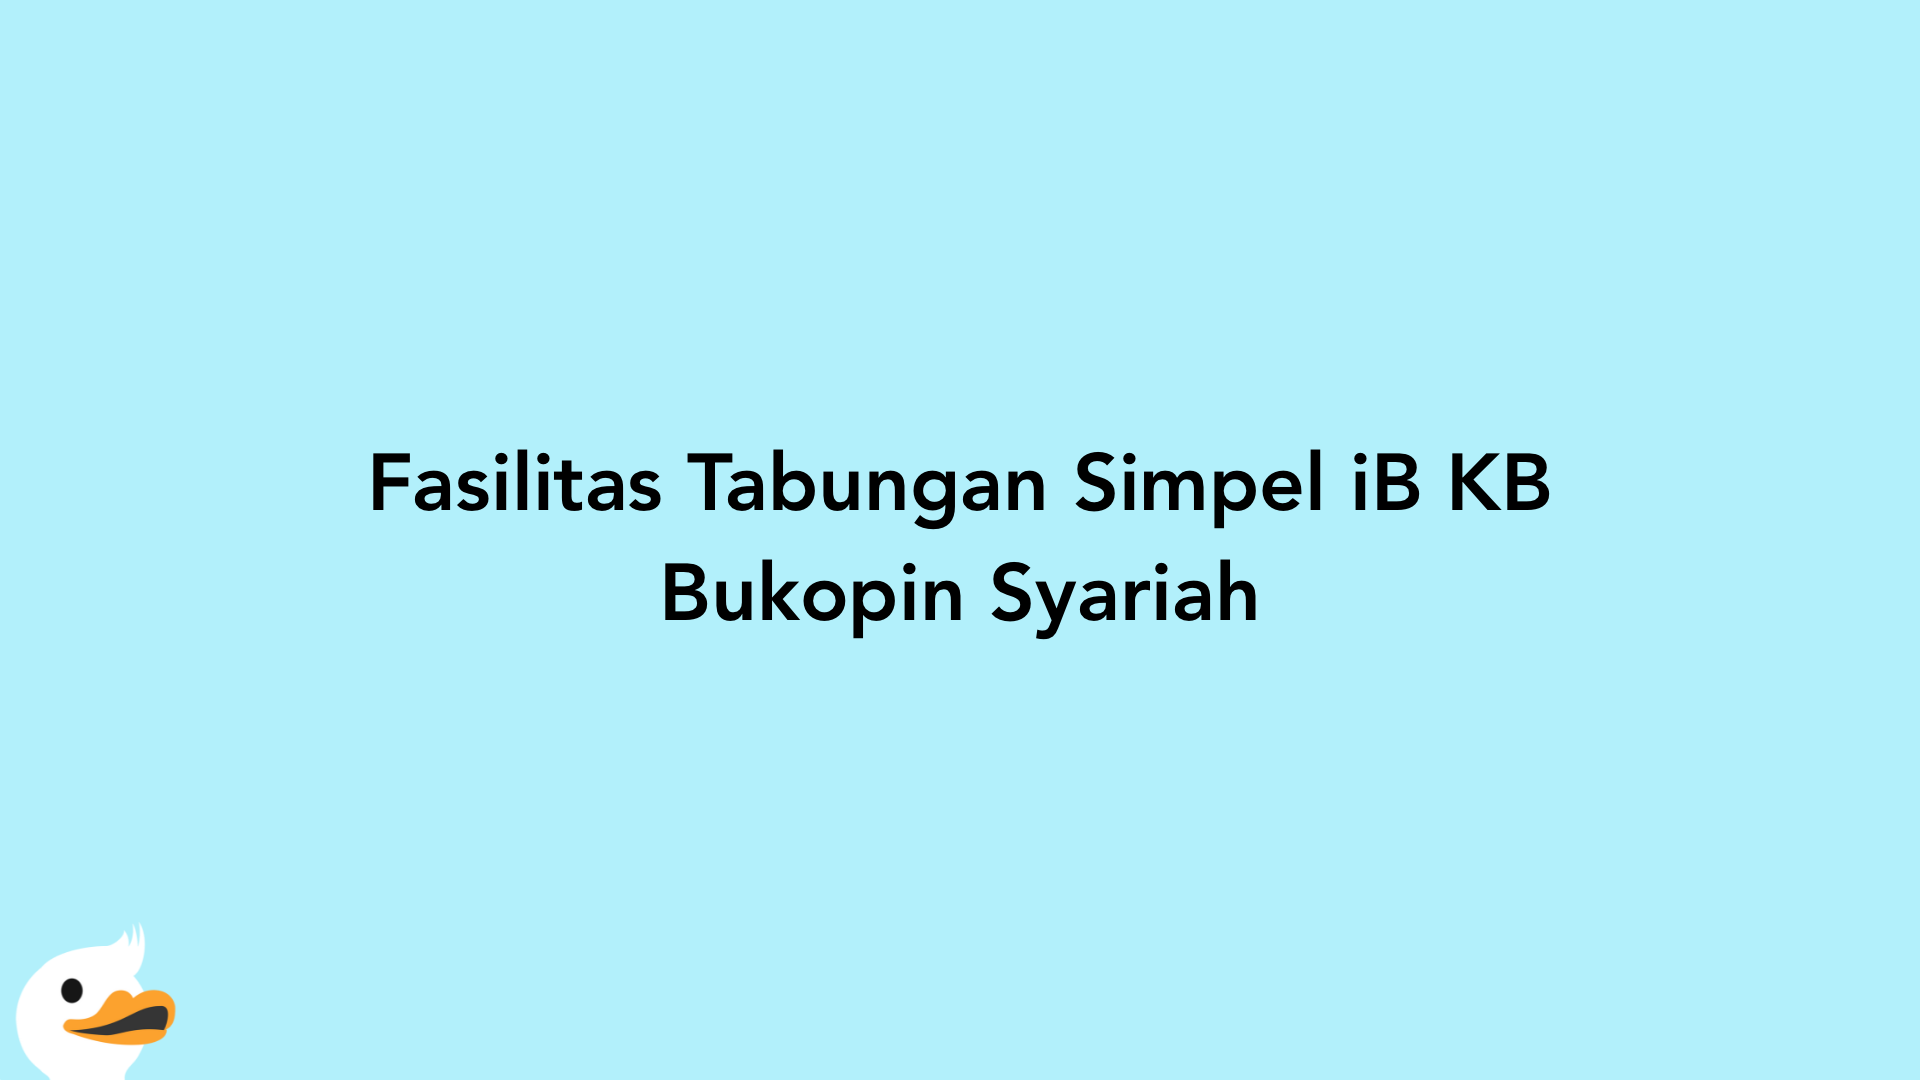 Fasilitas Tabungan Simpel iB KB Bukopin Syariah